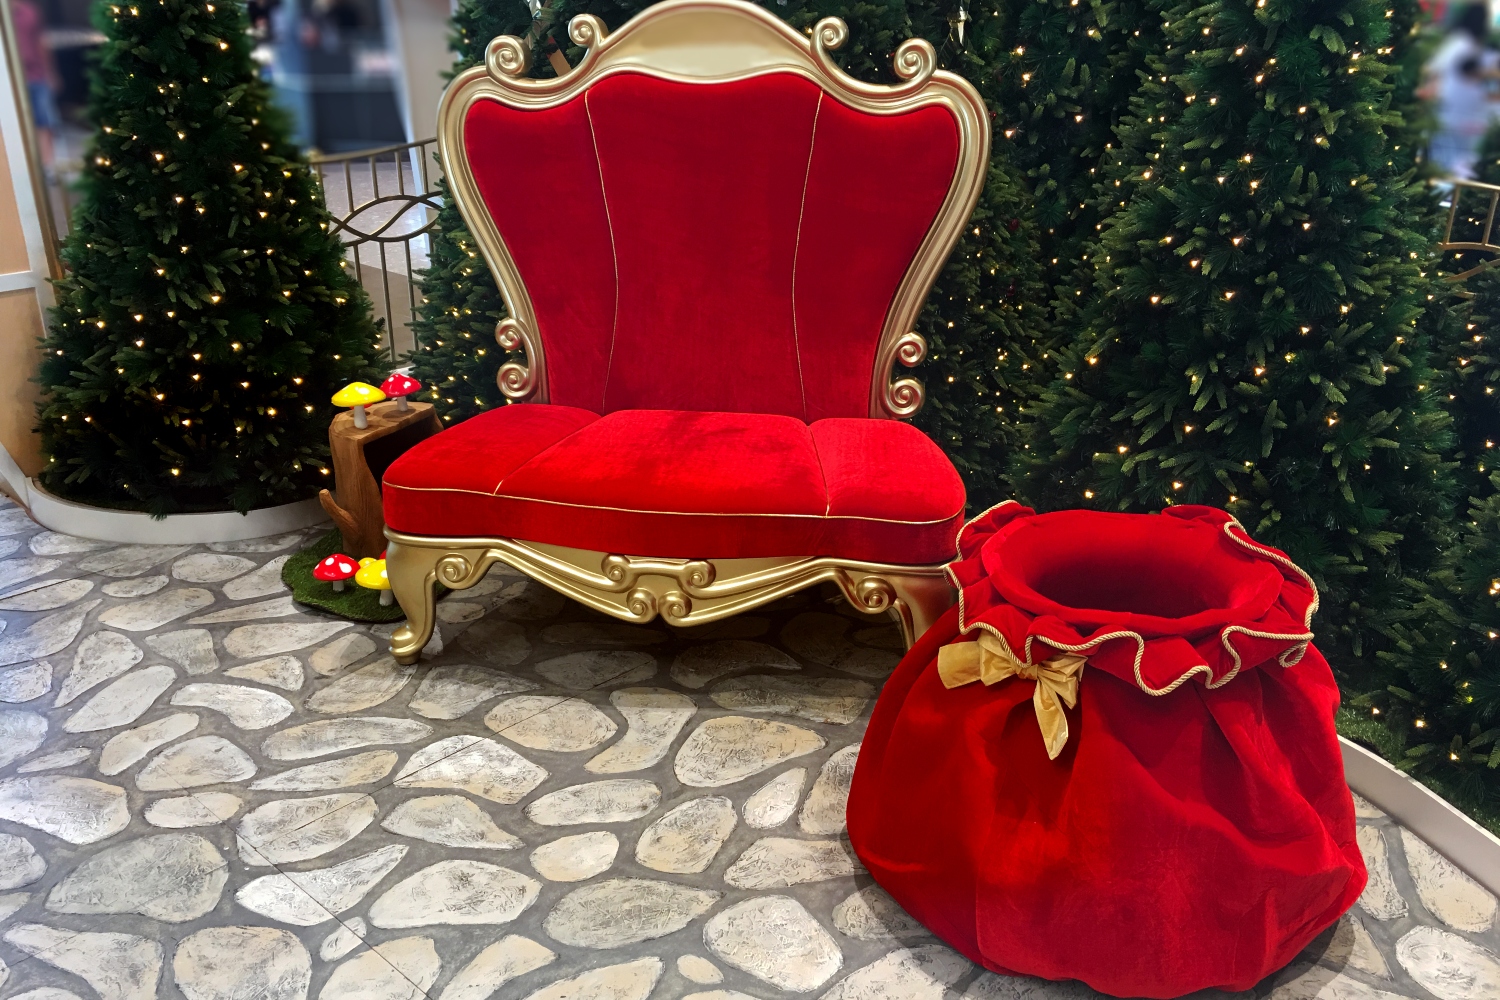 An empty red velvet Santa chair and red velvet bag